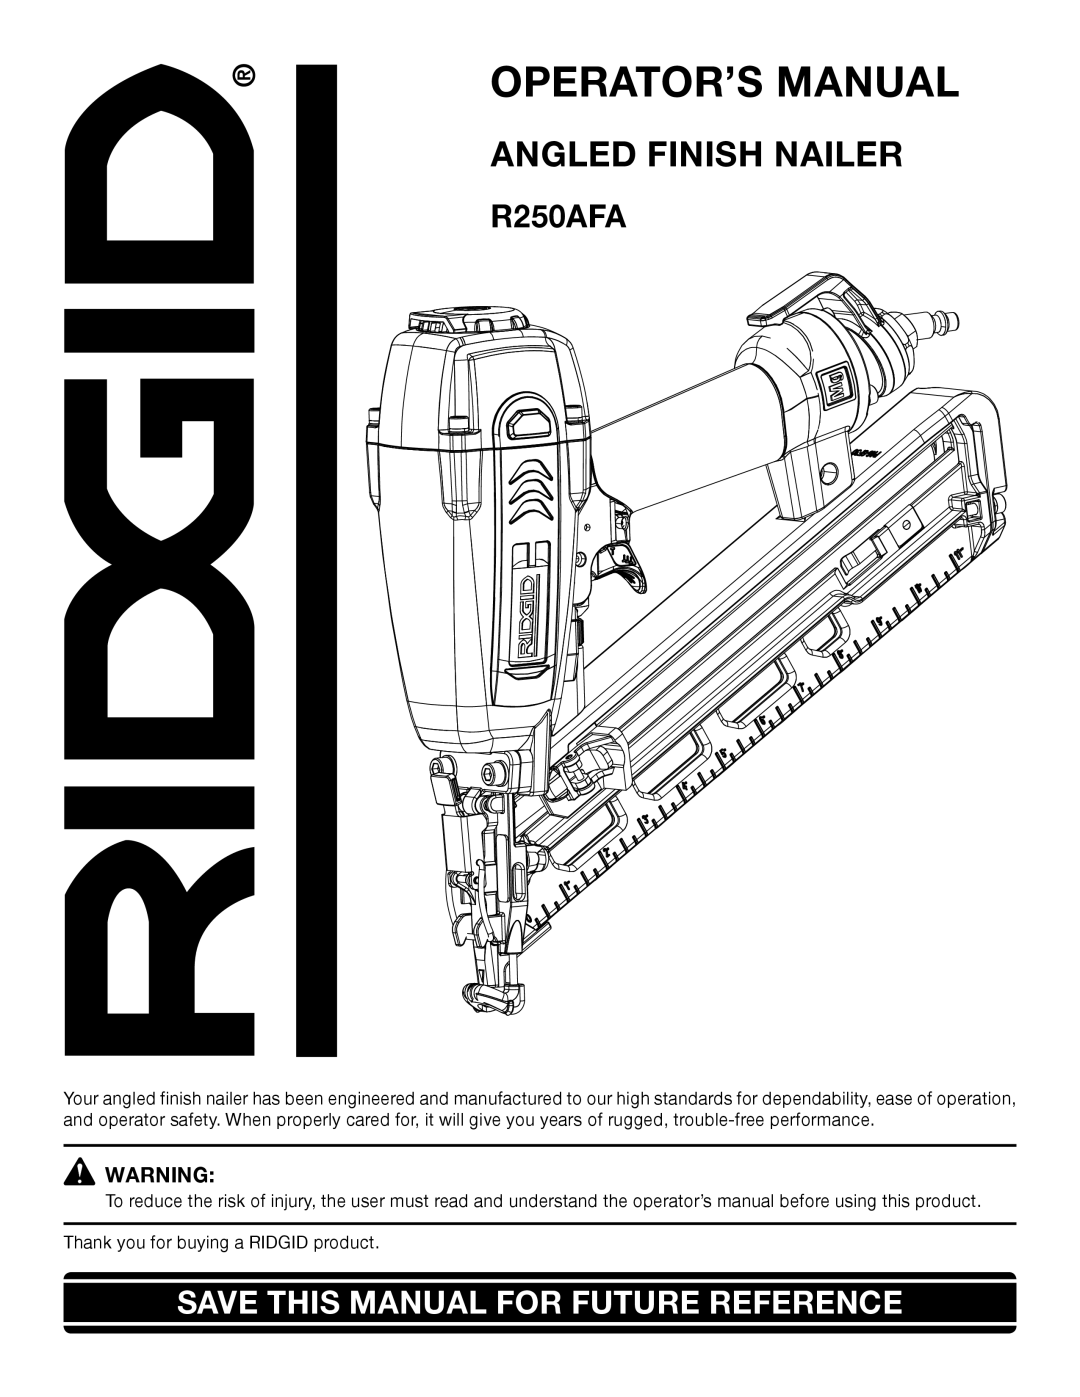 RIDGID R250AFA manual OPERATOR’S Manual 